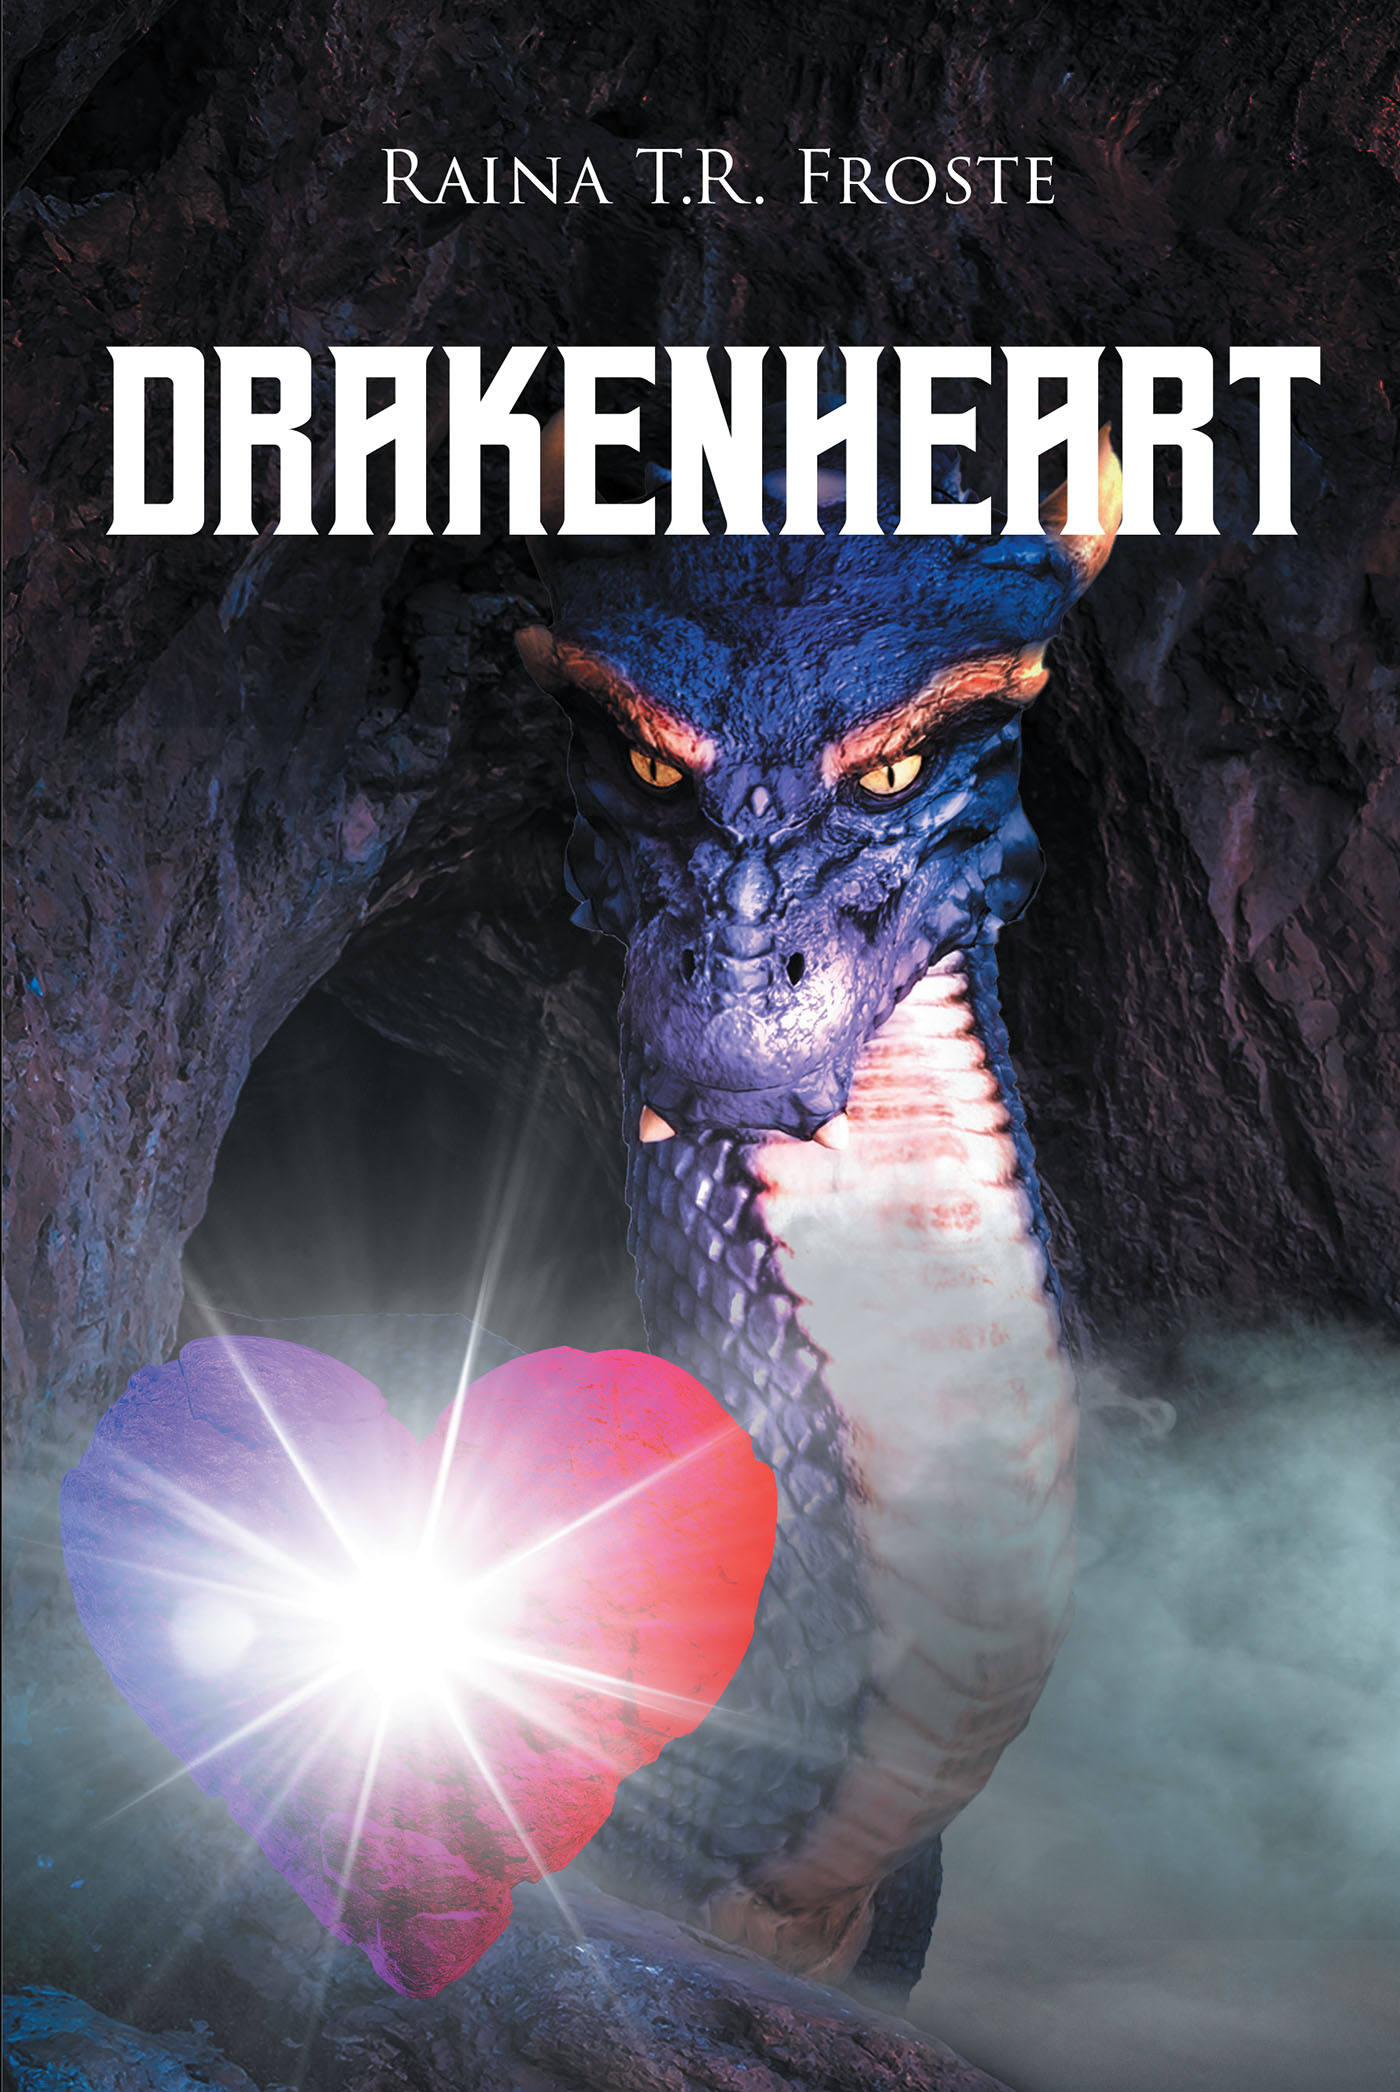 Drakenheart Cover Image